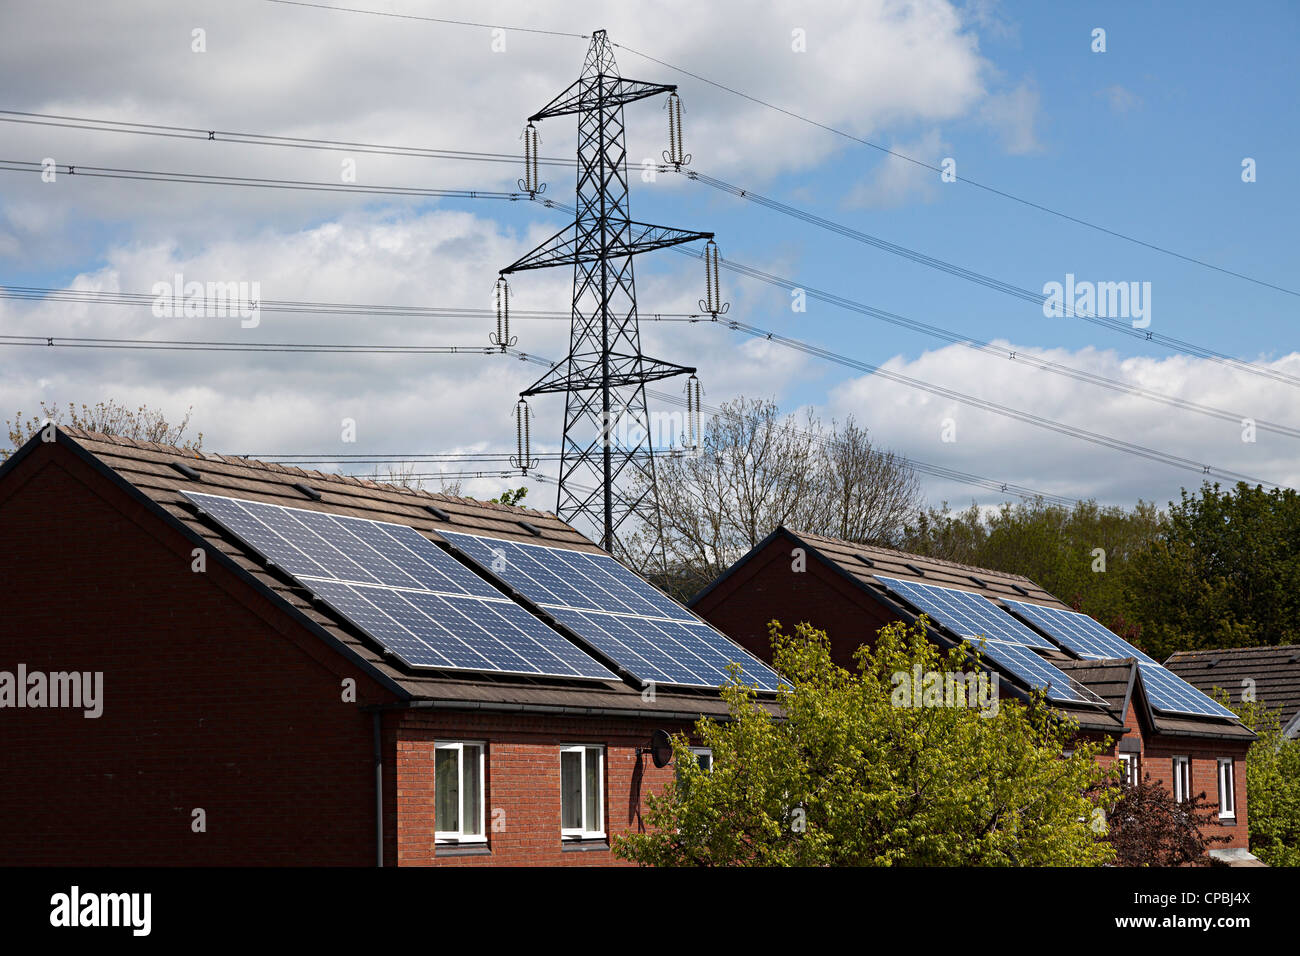 Des panneaux solaires sur des maisons avec pylônes derrière, Pays de Galles, Royaume-Uni Banque D'Images